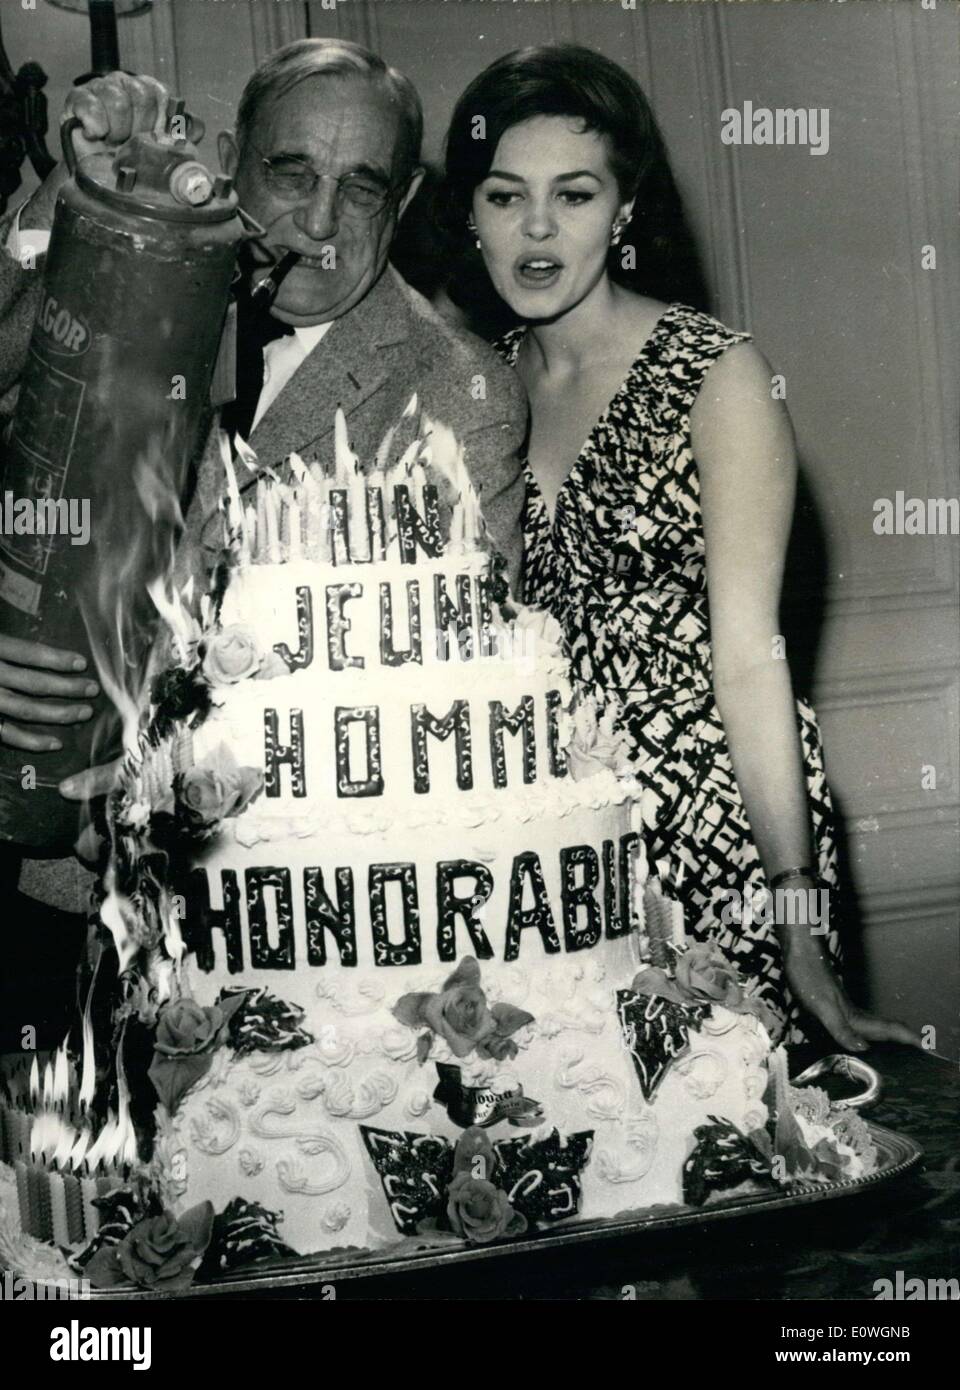 Sett. 15, 1962 - sono sul set di ''un giovane uomo d'onore'' a Jenner studio. Vanel il settantesimo compleanno torta aveva 327 candele su di esso. Foto Stock